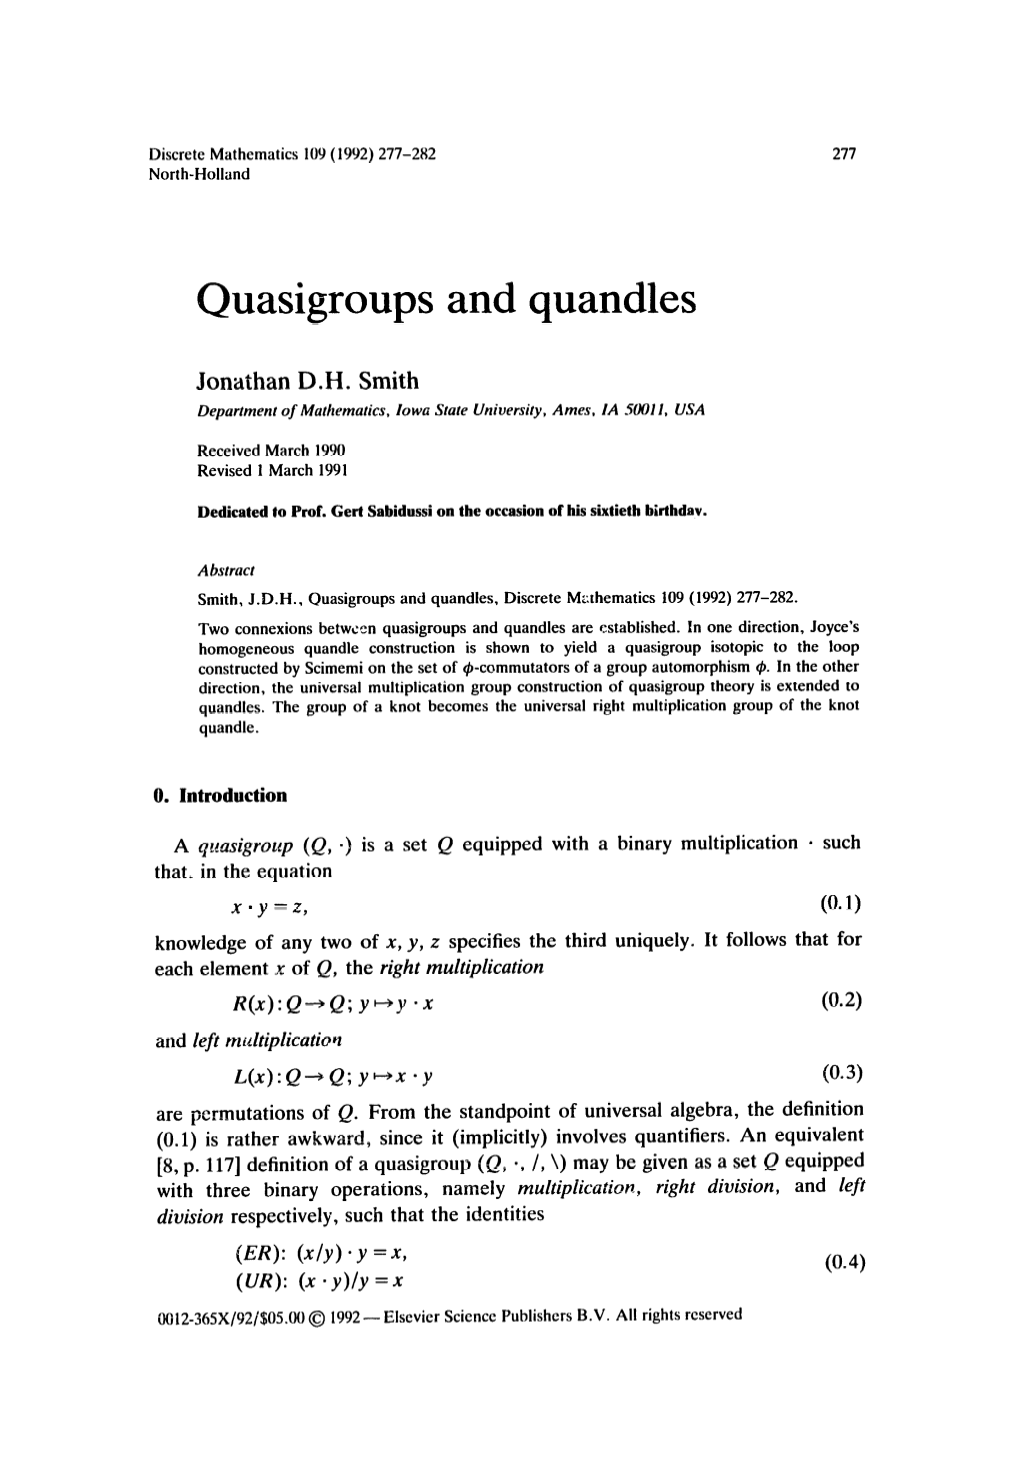 Quasigroups and Quandles